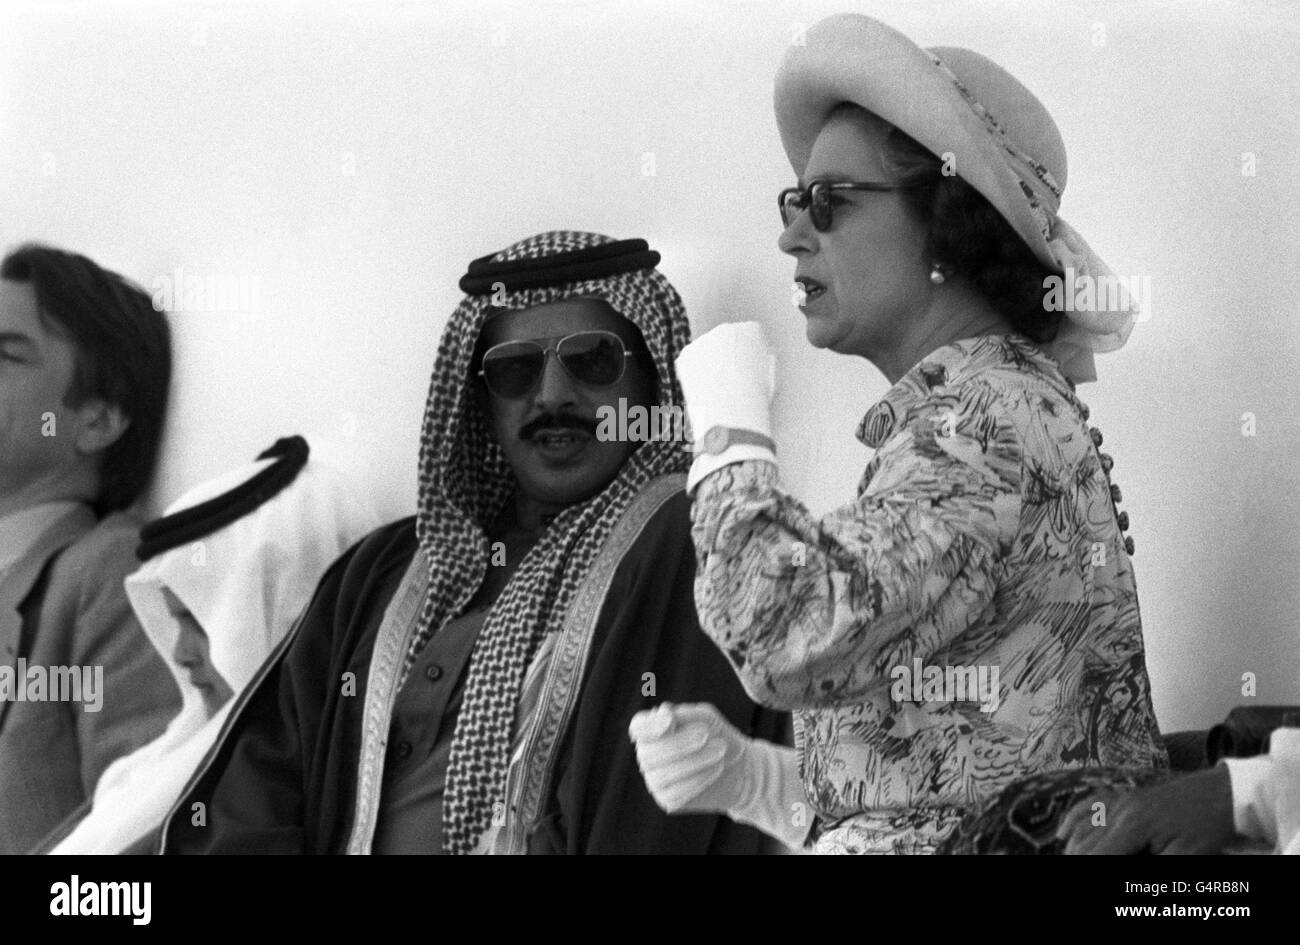 Regina Elisabetta II con Sheikh Ahmed bin Isa al-Khalifa alle gare in Bahrain. L'Emir è rigorosamente anti-scommettere e ha il suo modo di scoraggiare i pugni - cambia il numero su tutti i cavalli poco prima dell'inizio della gara. Ma quando la Regina visitò non furono fatte modifiche. Foto Stock